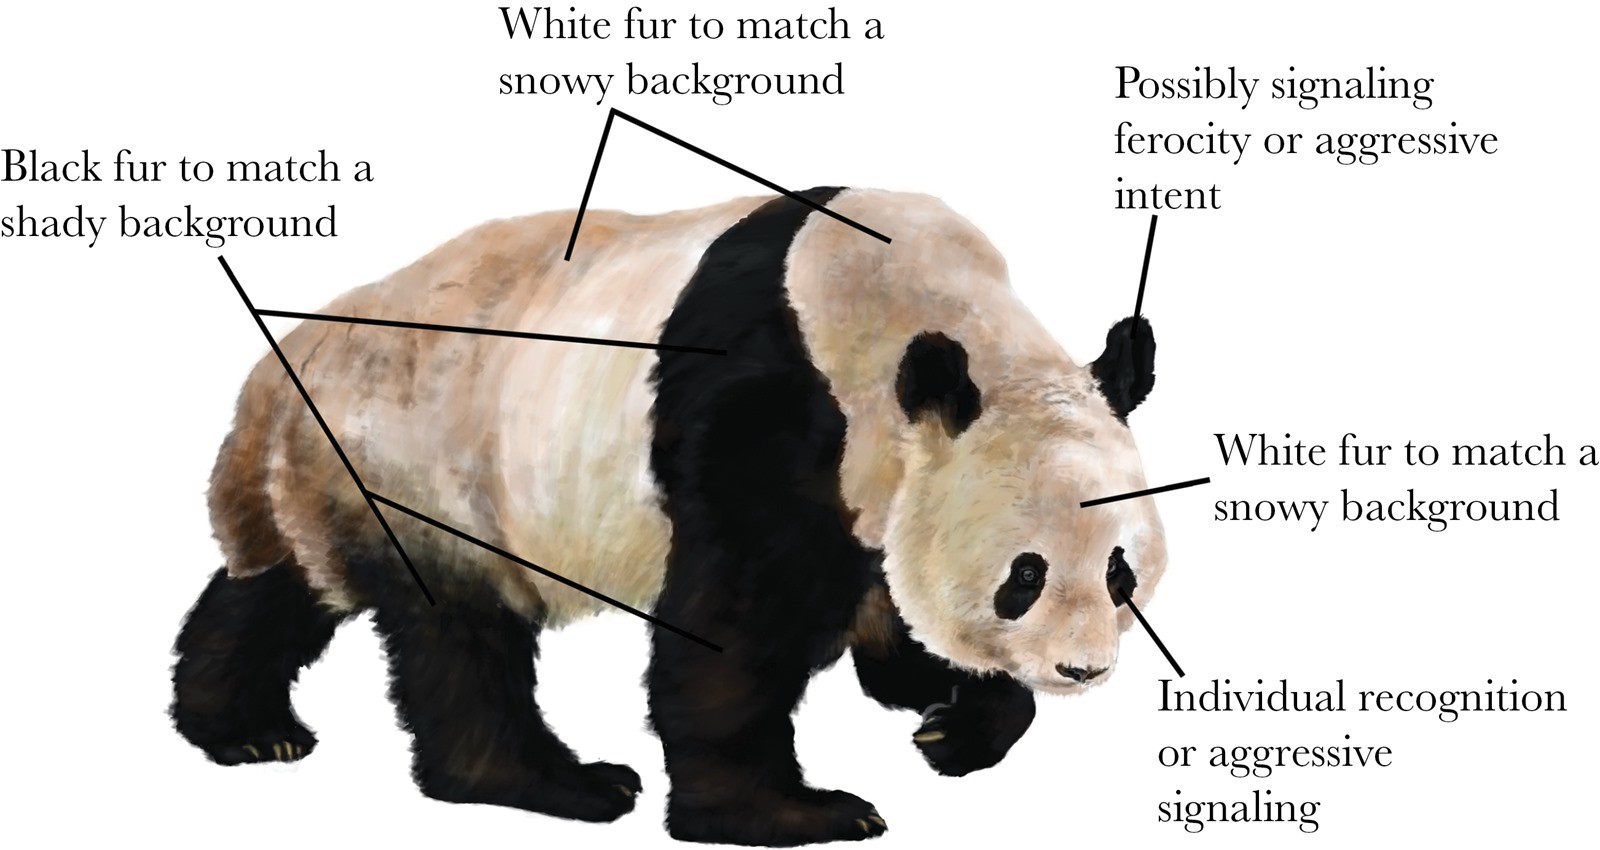 Quelle est l’utilité de la coloration noire et blanche de la fourrure des pandas ?